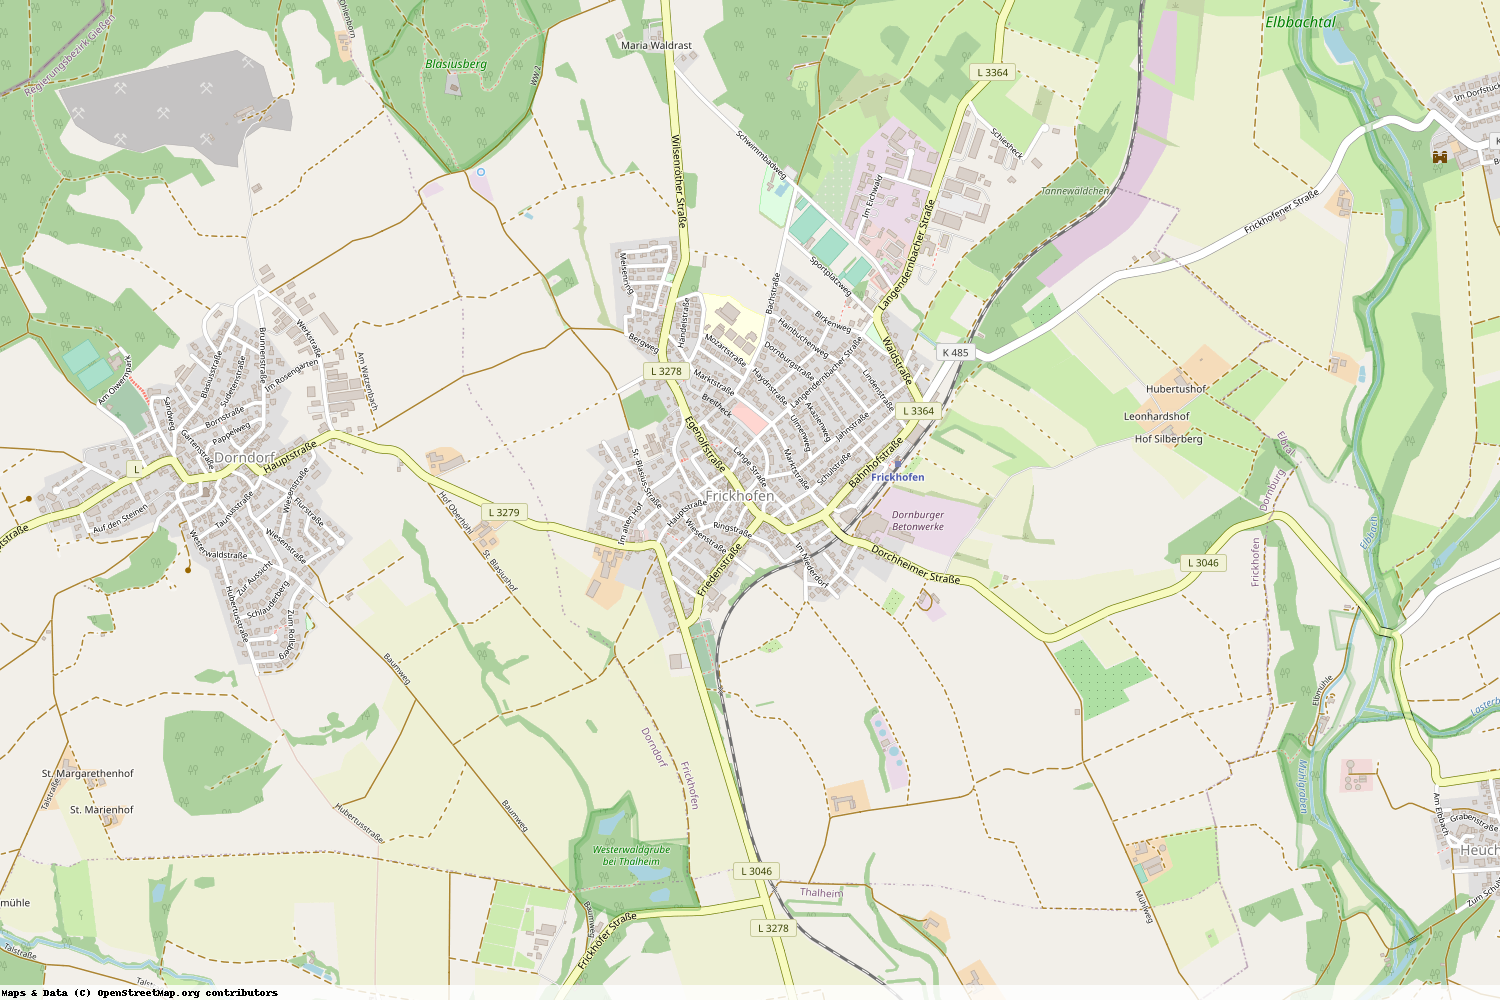 Ist gerade Stromausfall in Hessen - Limburg-Weilburg - Dornburg?